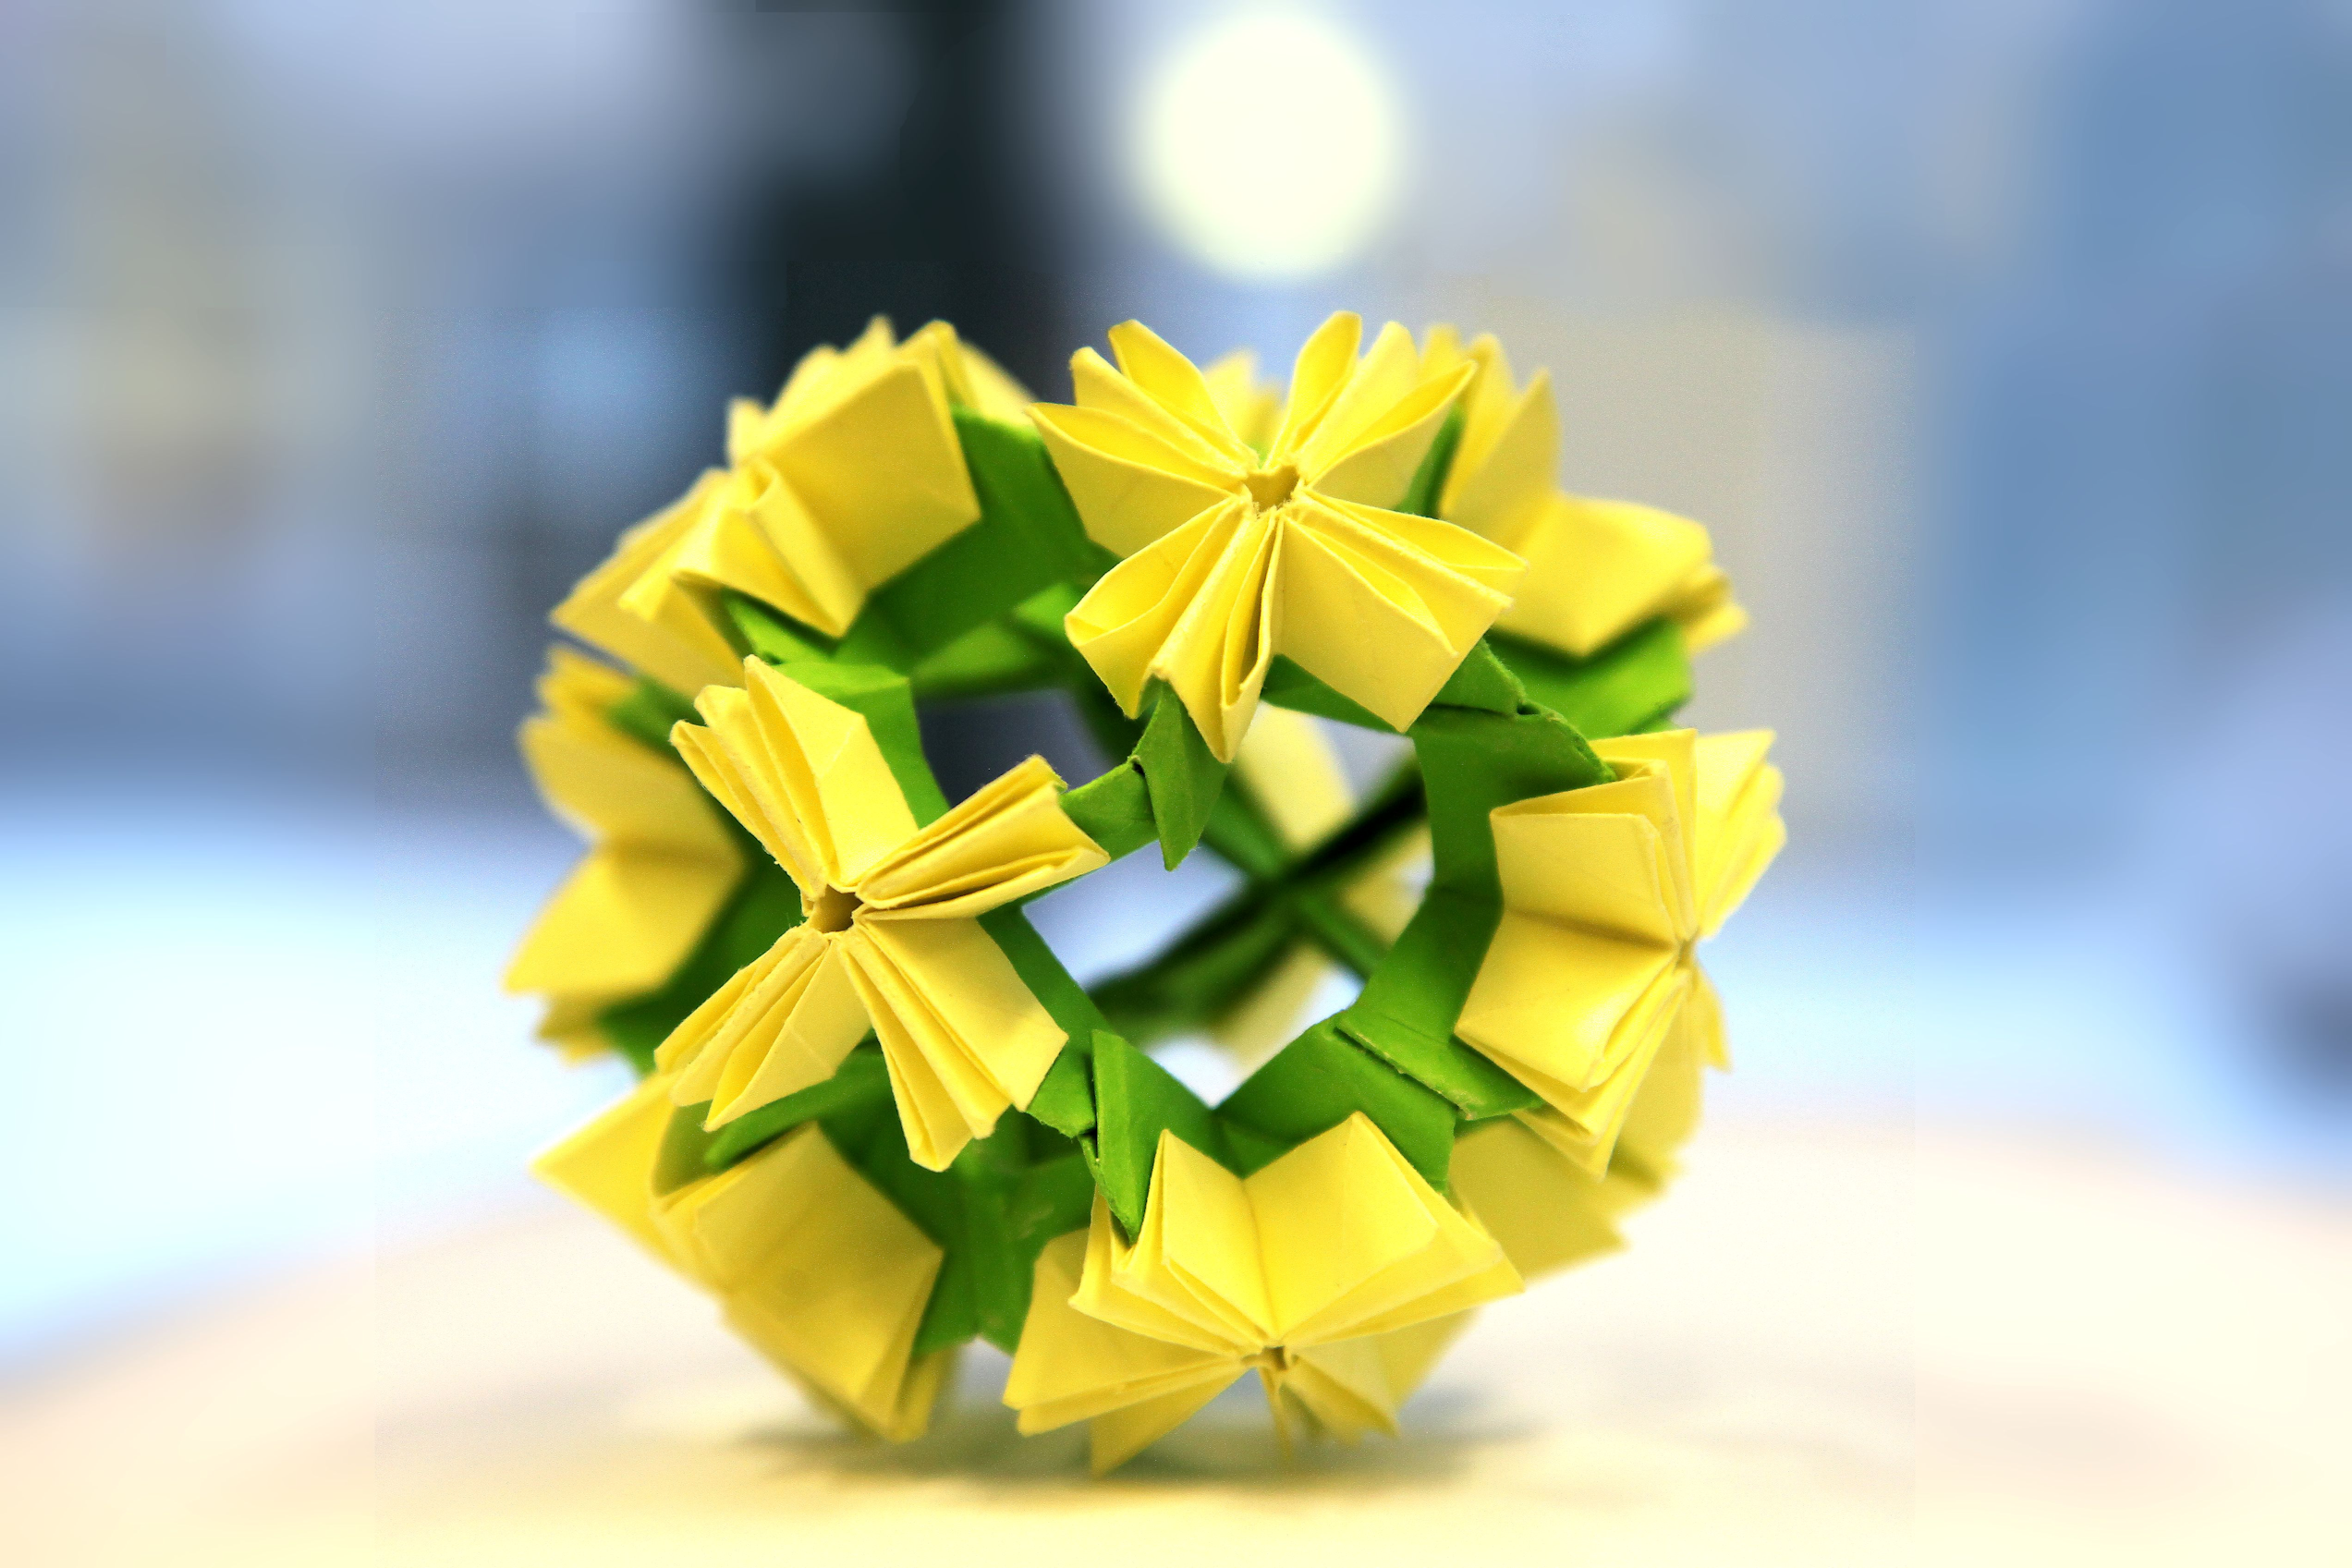 Kuvassa on vihreän ja keltaisen värinen pyöreä paperista taiteltu pallo.